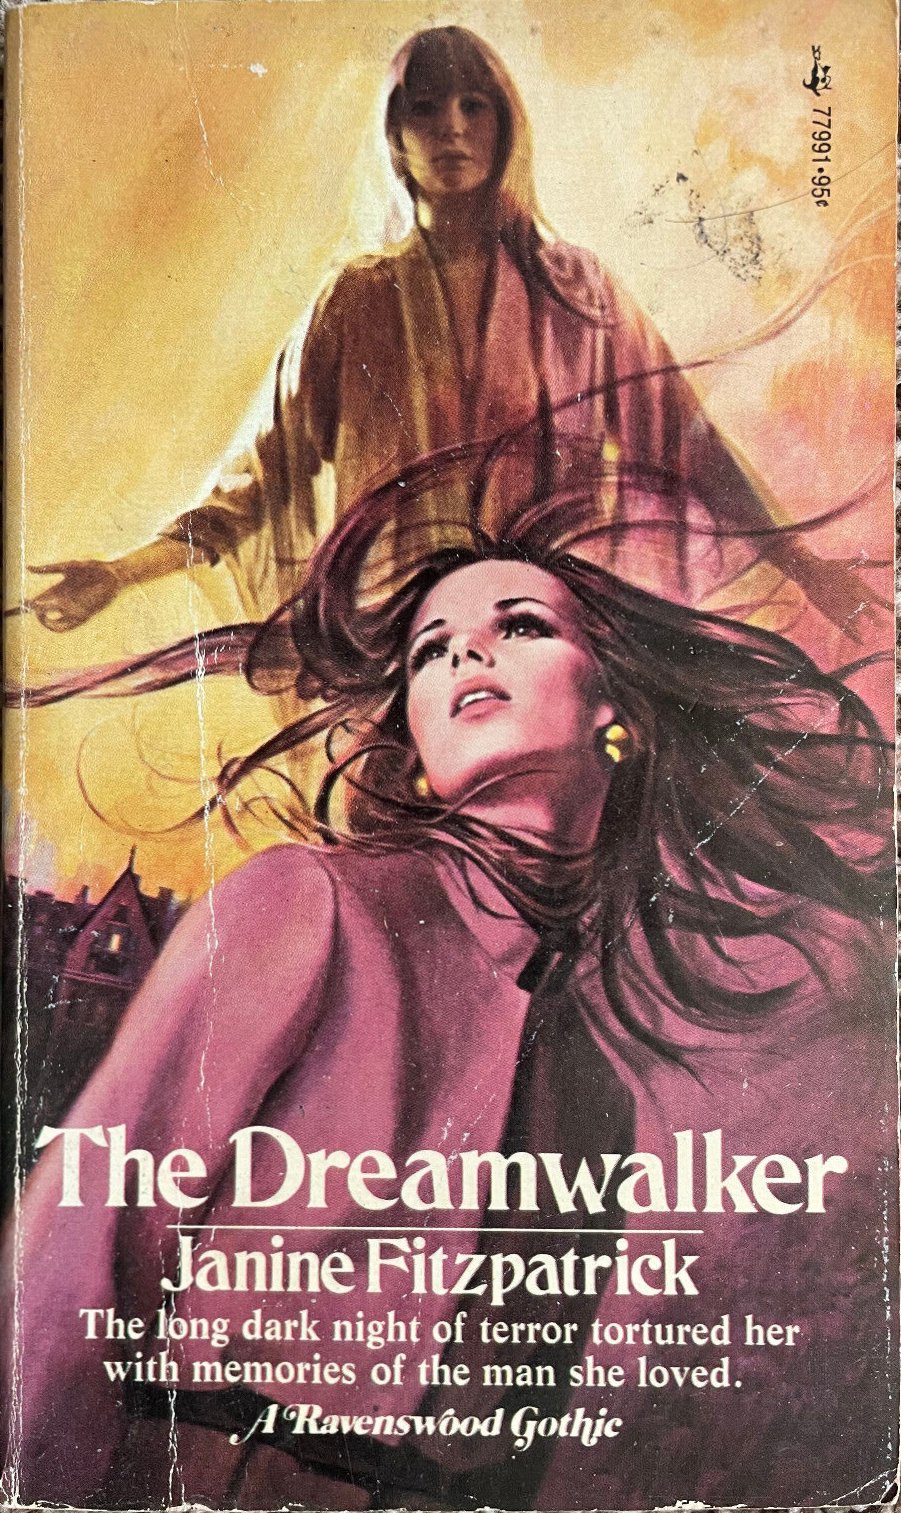 Janine Fitzpatrick: The Dreamwalker (1975)